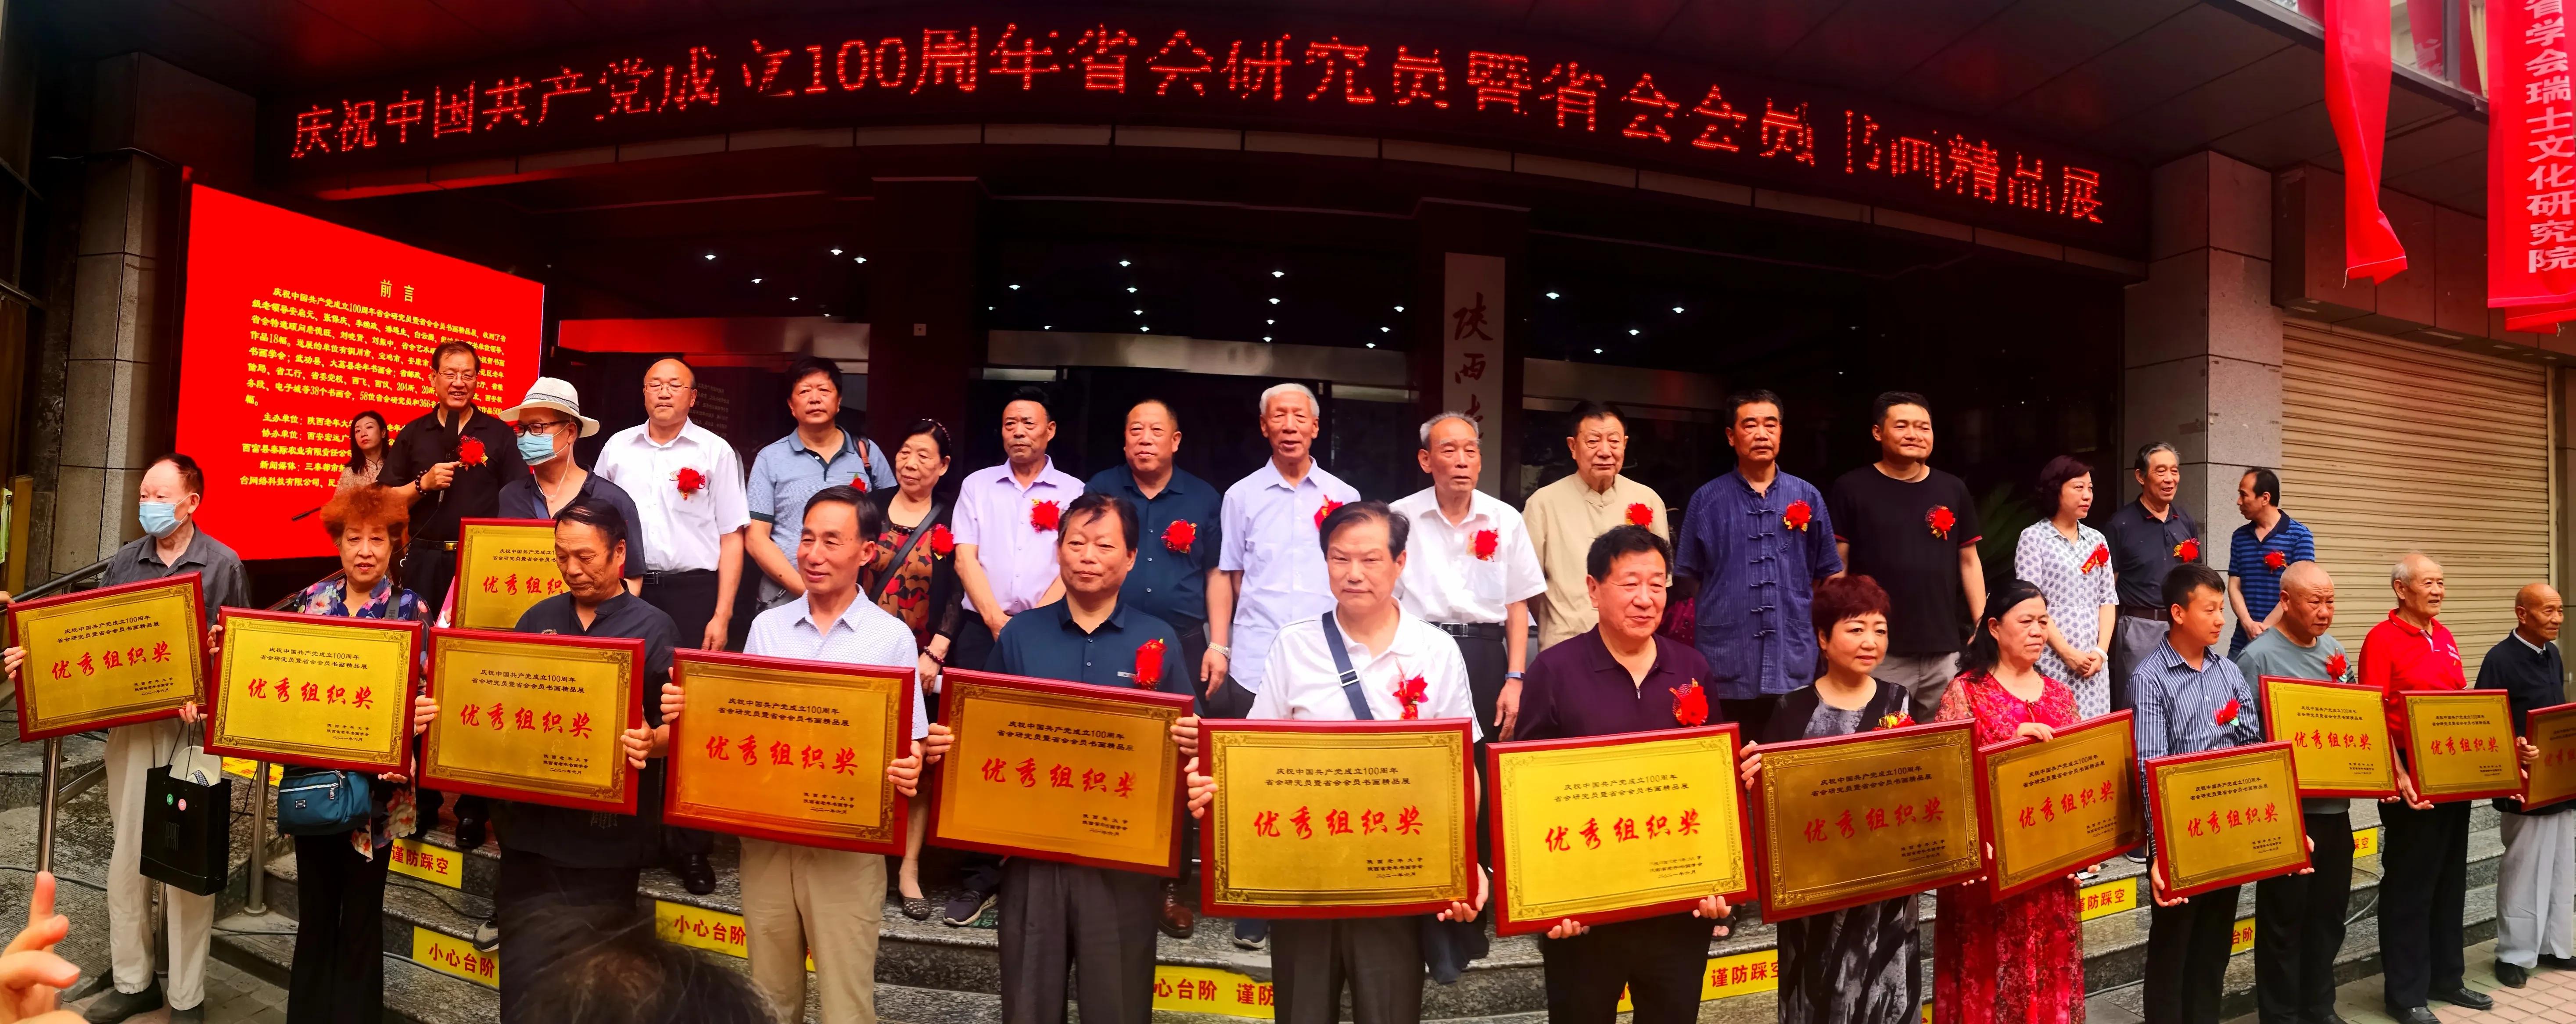 庆祝建党100周年陕西省老年书画学会书画精品展隆重开幕